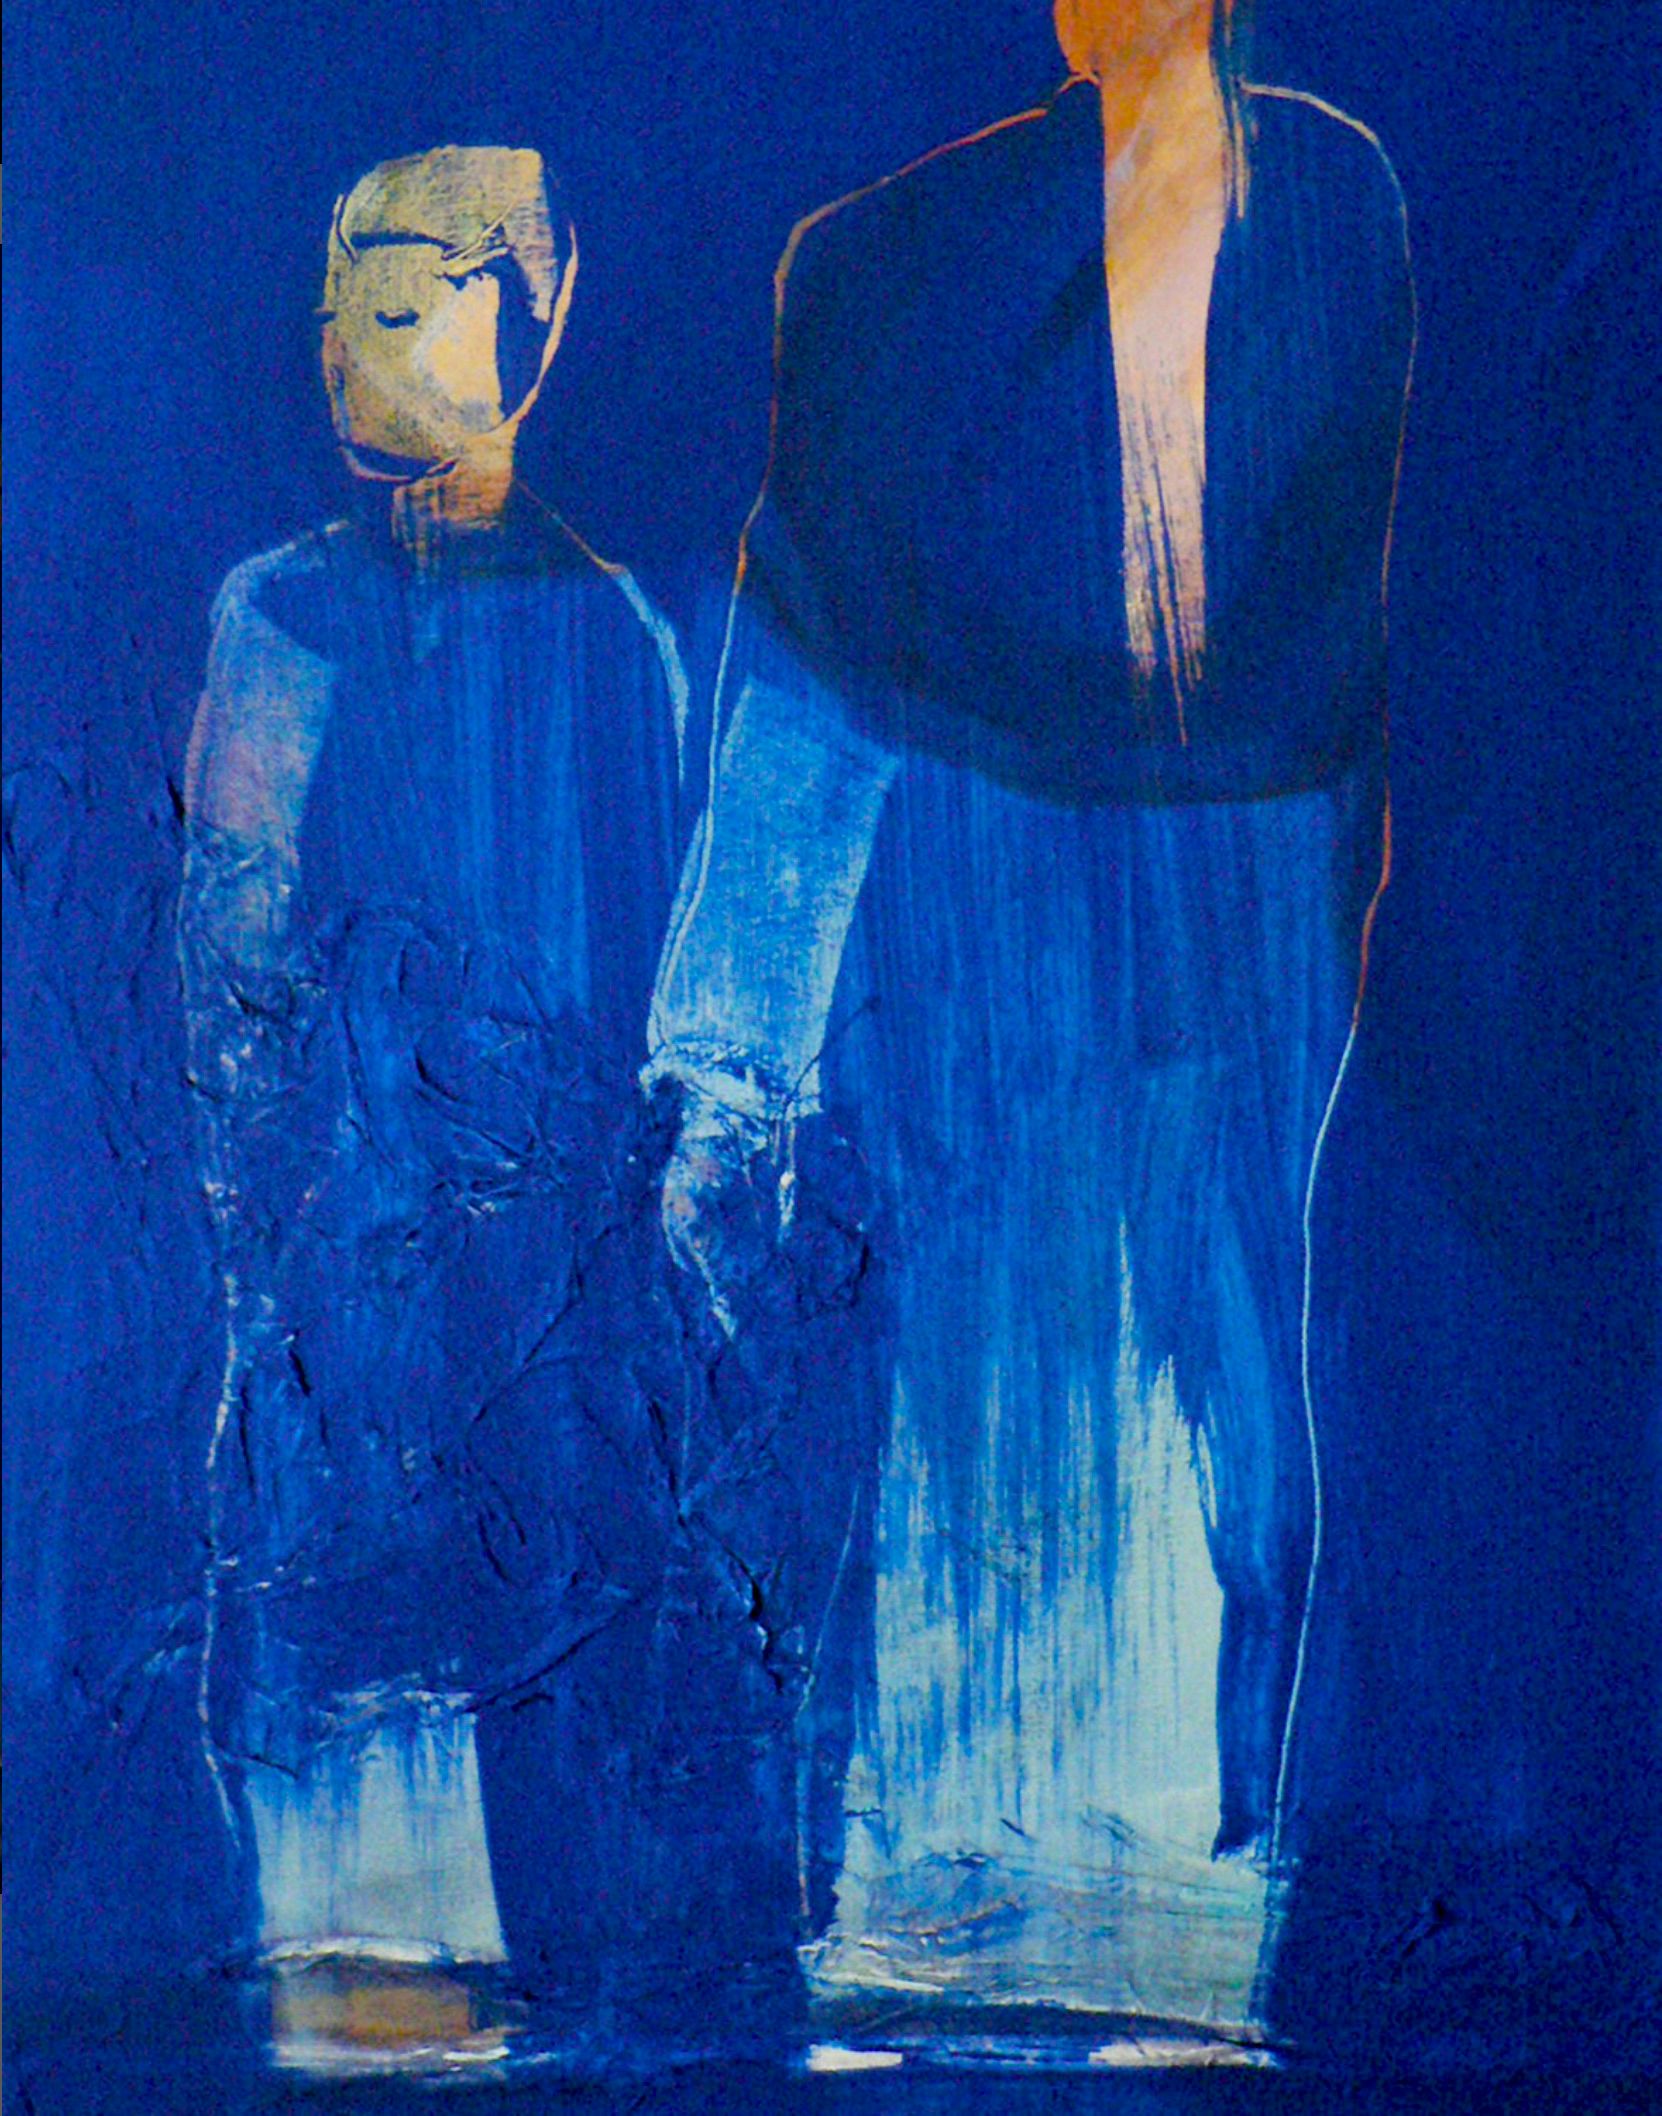 Il dipinto "En marche" di Sylvia Baldeva mostra due persone, movimento, camminata, scena di vita, collage notturno di acrilico e carta di riso su tela. I colori sono prevalentemente blu